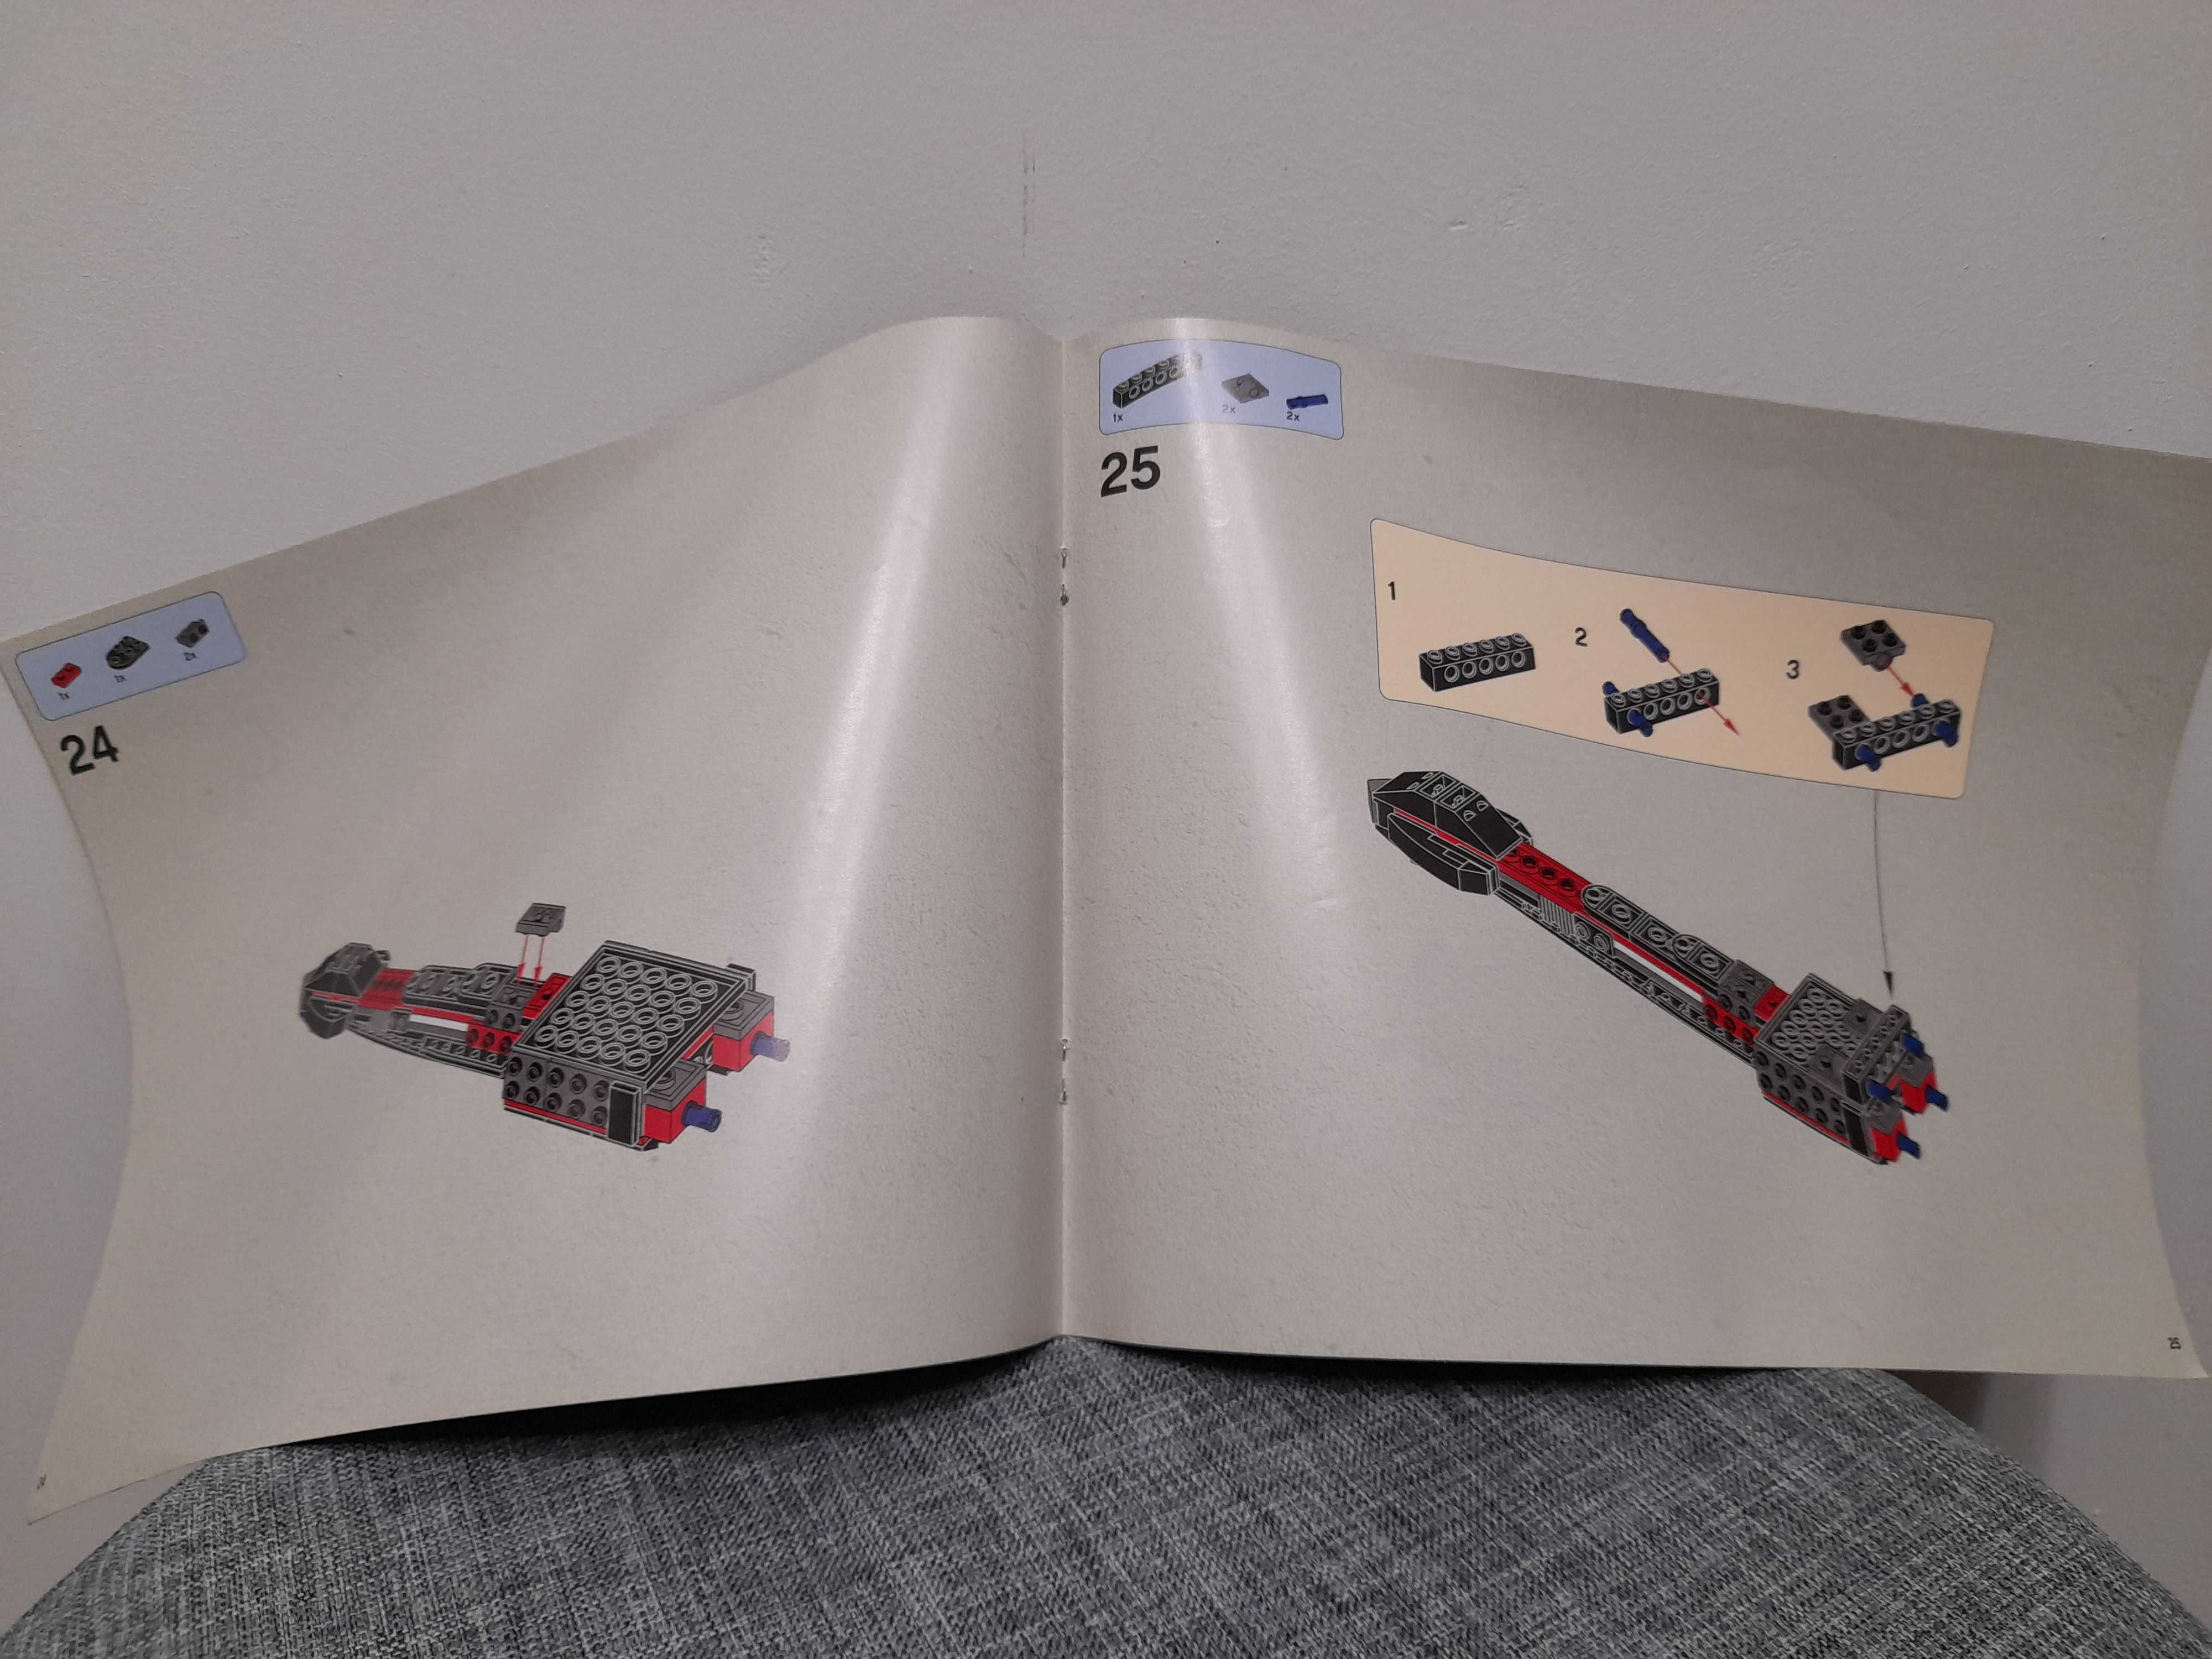 Instrukcja LEGO 75018 Star Wars - JEK-14’s Stealth Starfighter